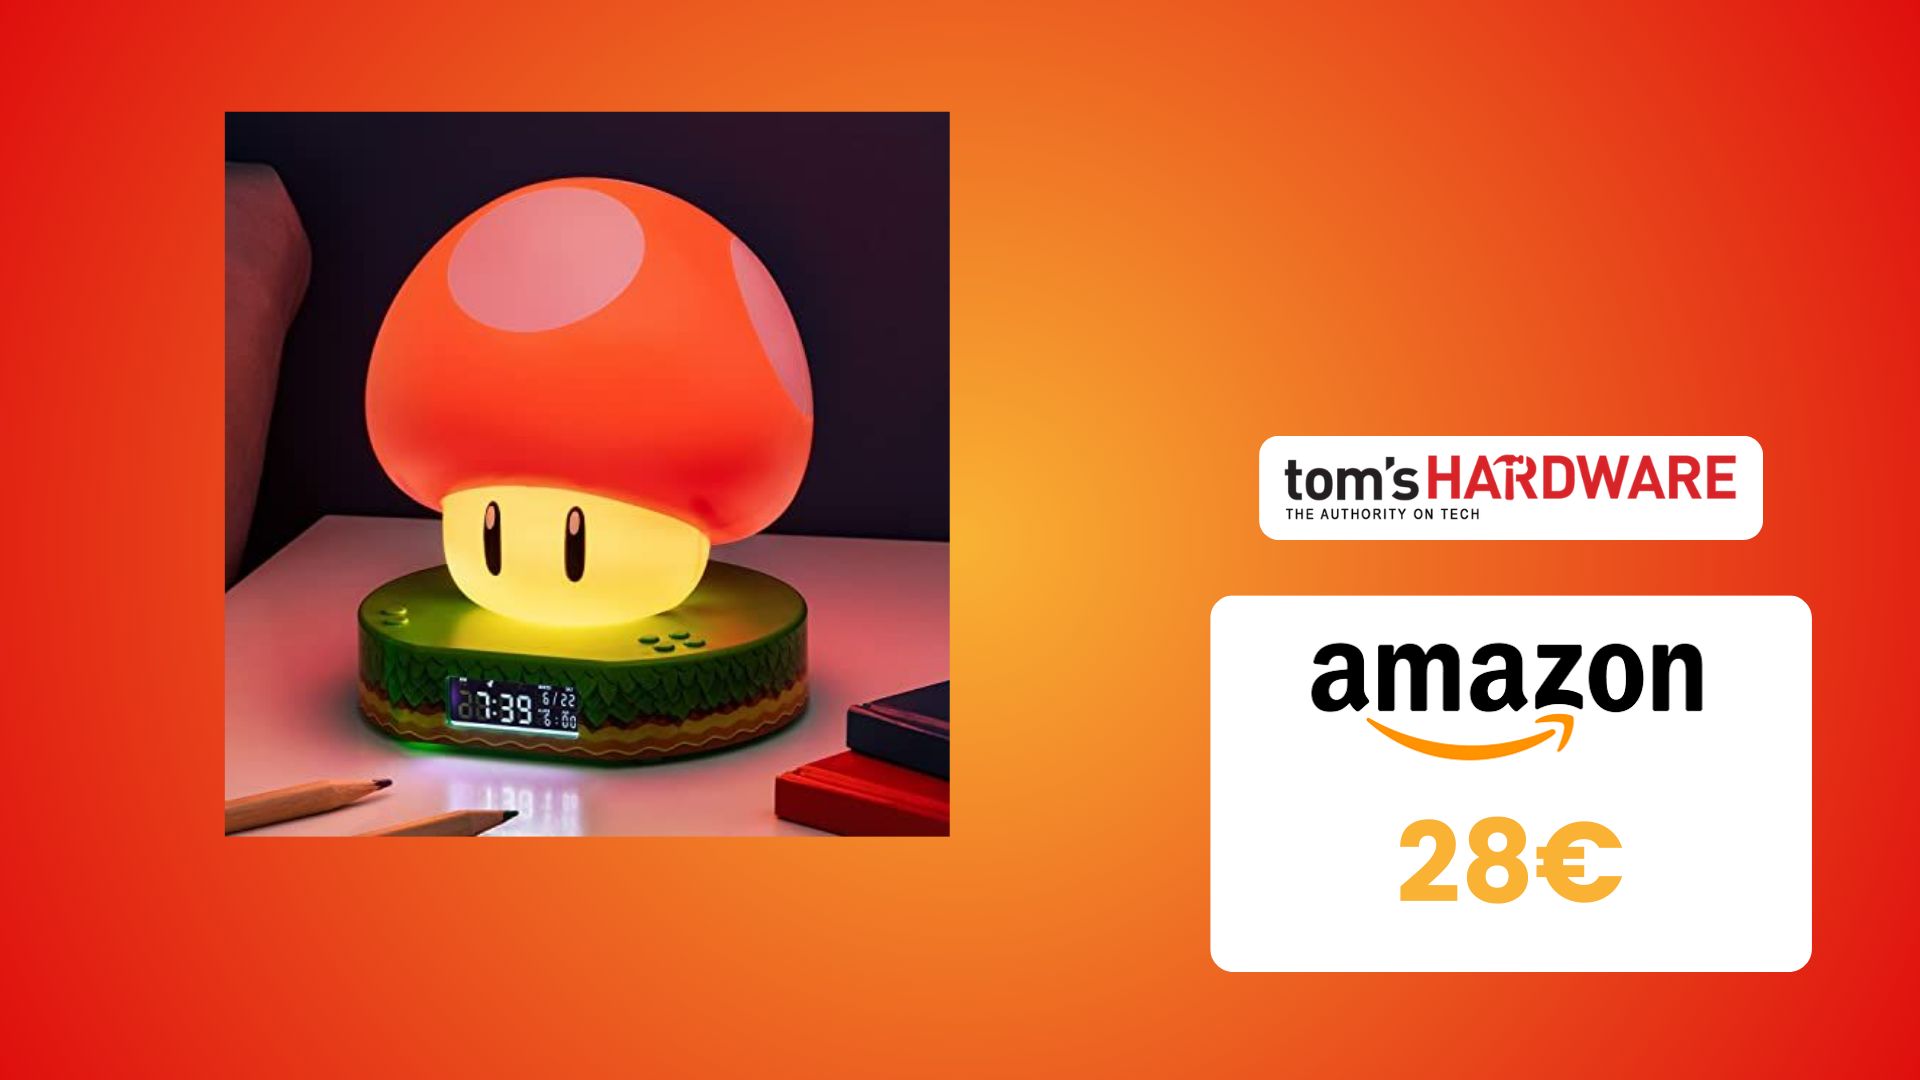 PREZZO BOMBA per questa sveglia di Super Mario, ora a meno di 30€ - Tom's  Hardware